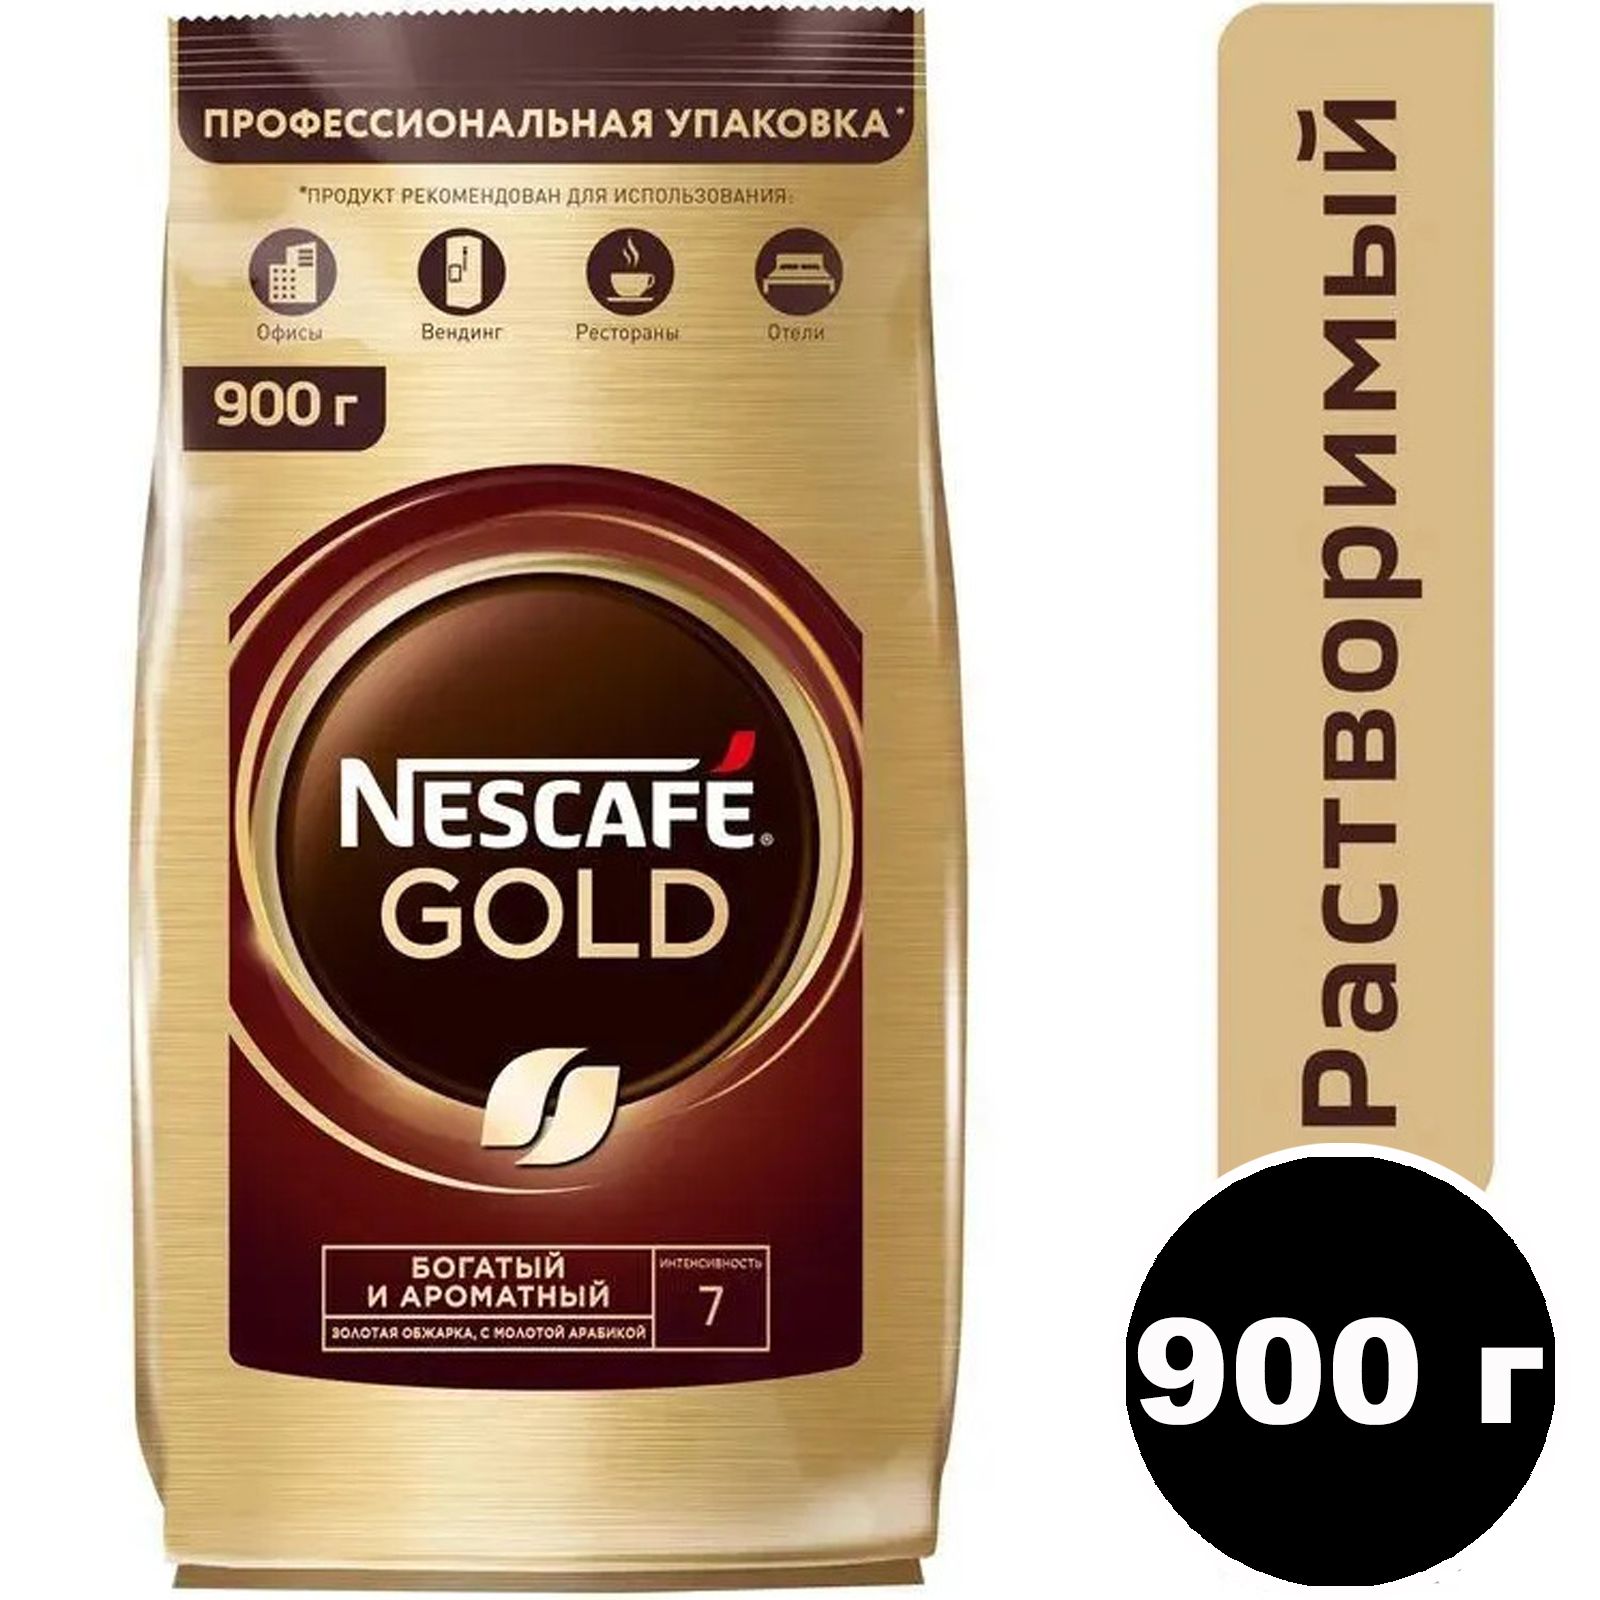 Nescafe gold 320. Nescafe кофе Gold 900г.. Нескафе Голд 750 гр. Кофе Нескафе Голд 750 гр. Кофе растворимый Нескафе Голд 900 гр.